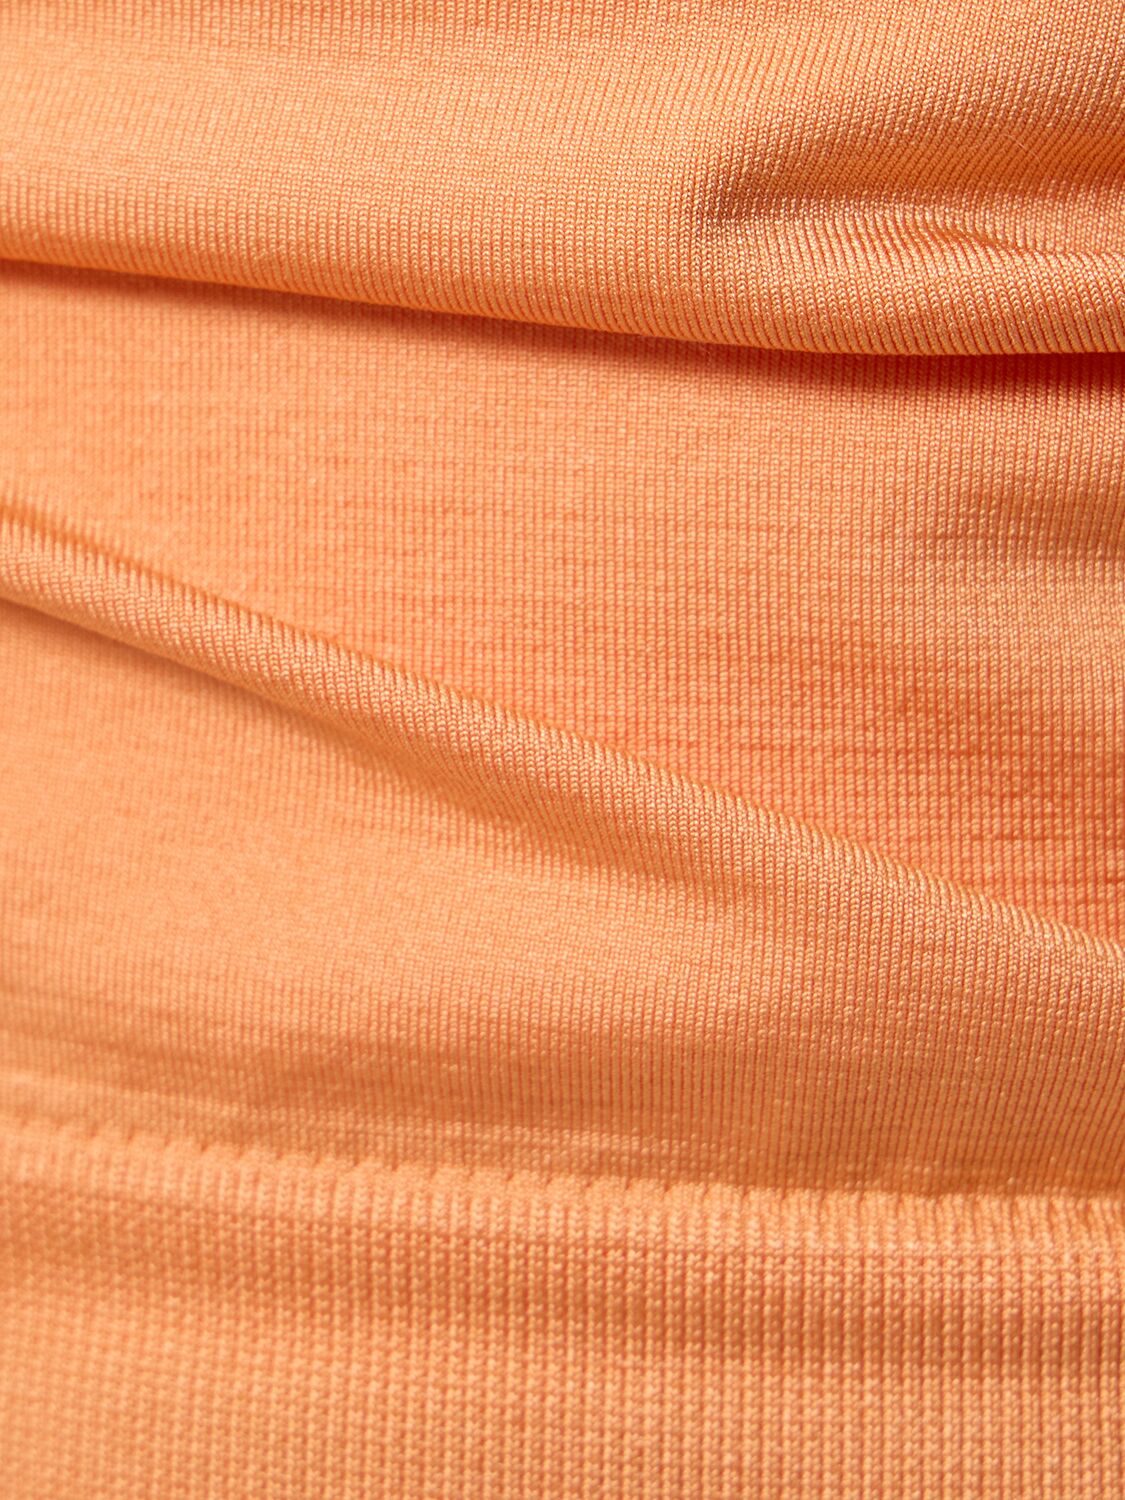 Shop Prism Squared Captivating Strapless Bikini Bra Top In Orange